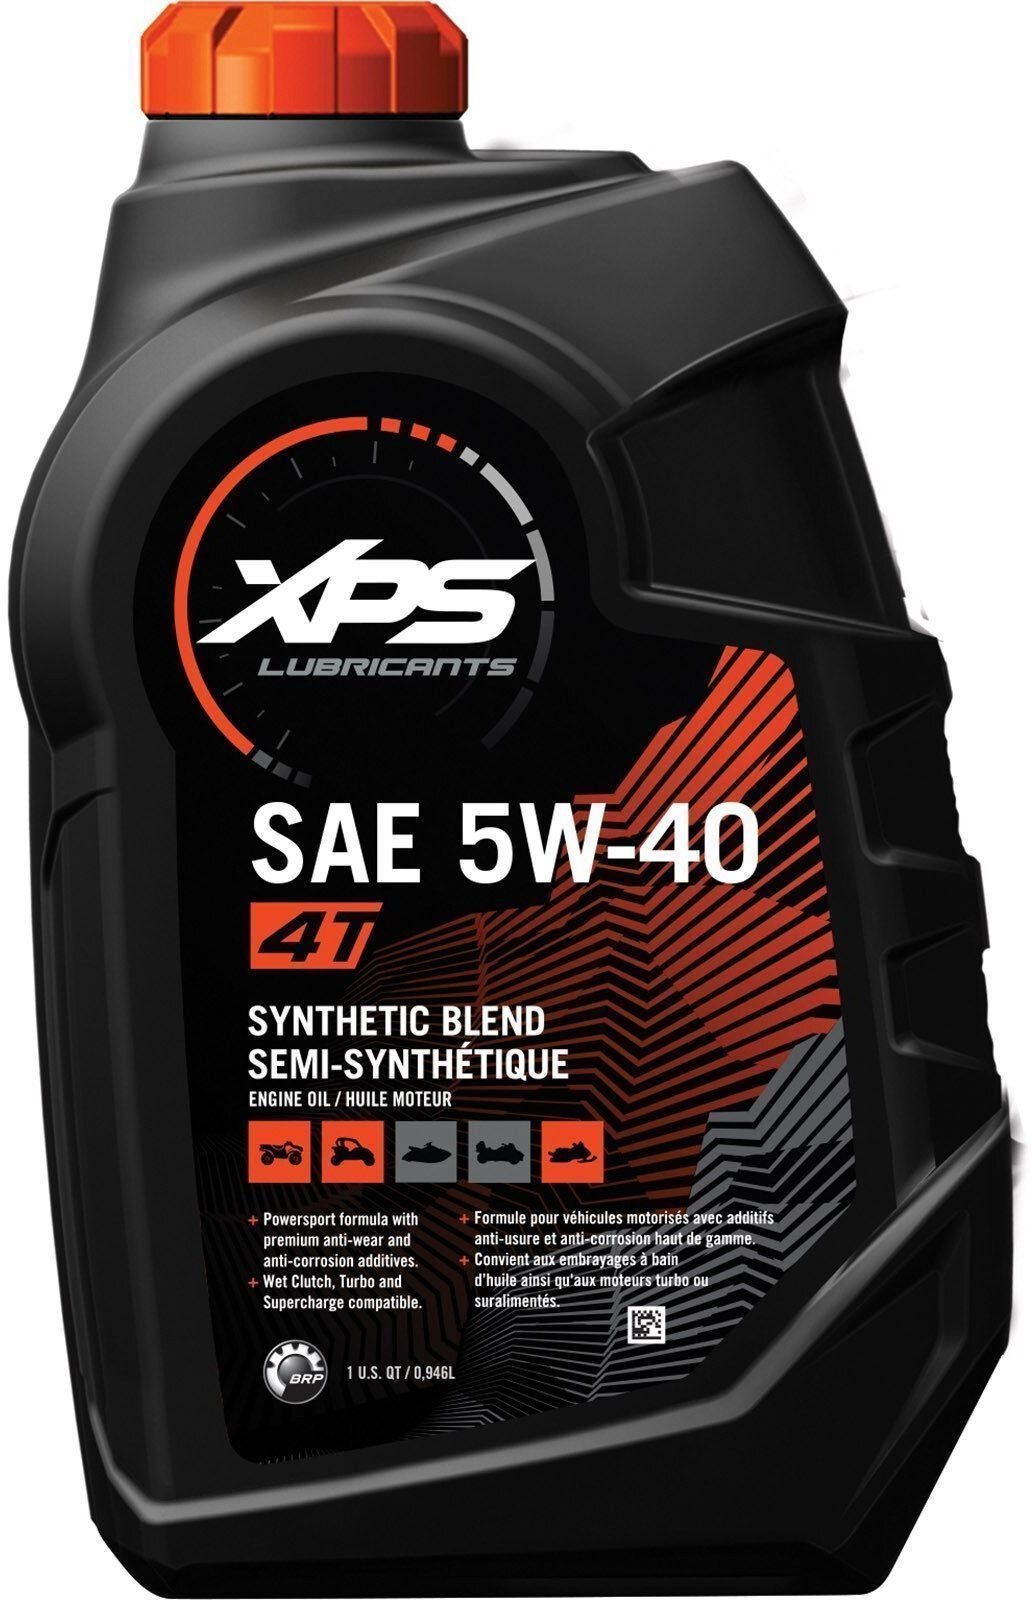 Lodný motorový olej 4 takt BRP XPS SAE 5W-40 4T Synthetic